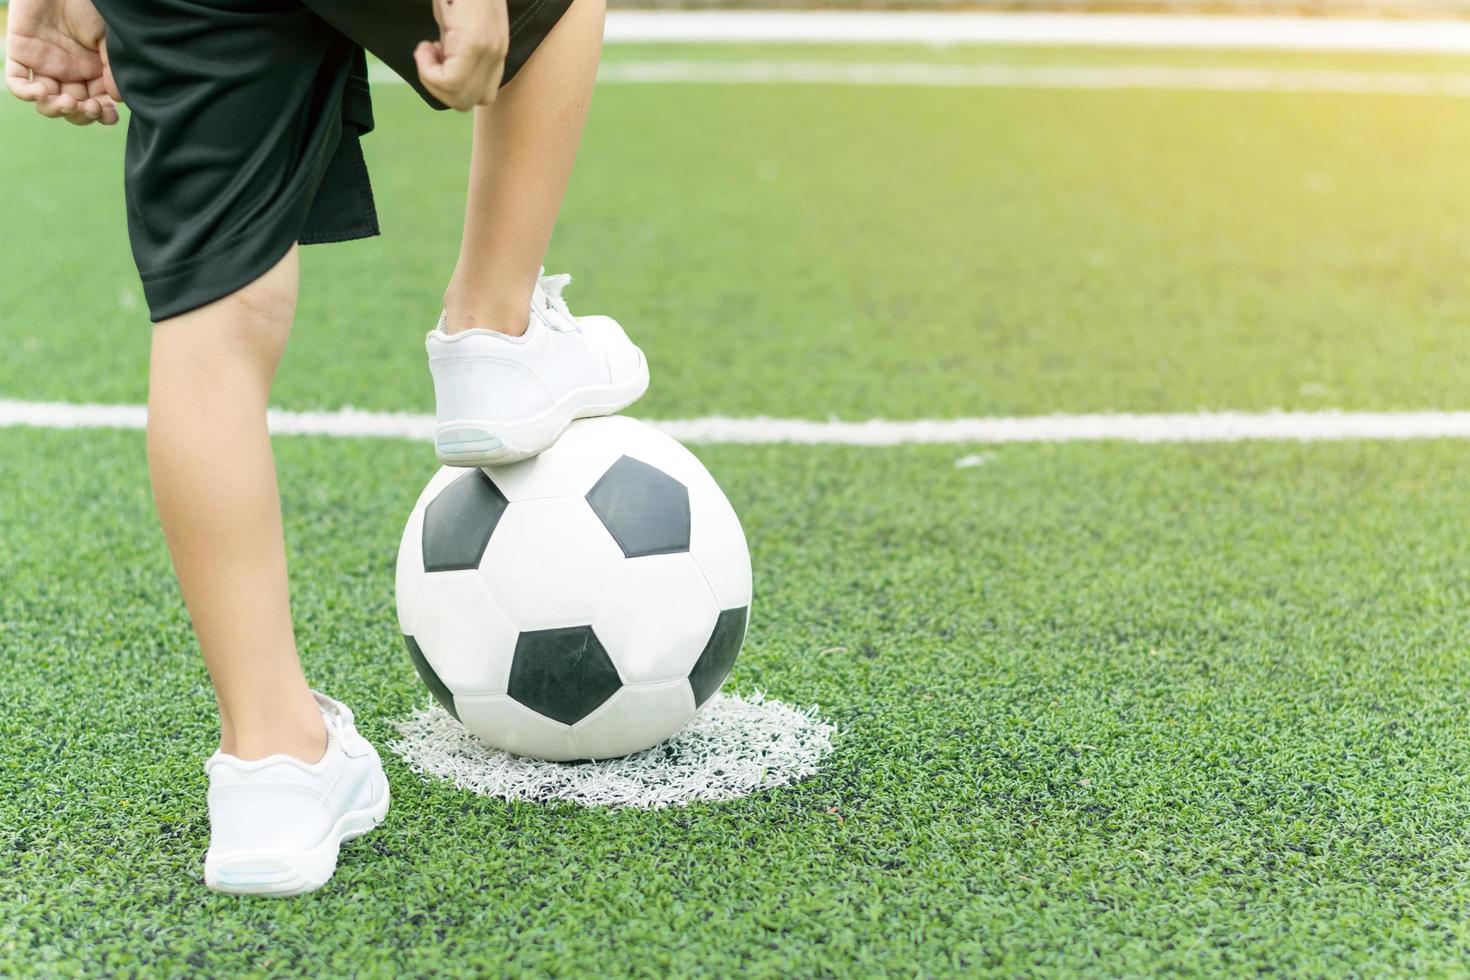 Perseo Persistente asignar Pies de un niño vestido con zapatillas blancas pisando una pelota de fútbol  1433104 Foto de stock en Vecteezy